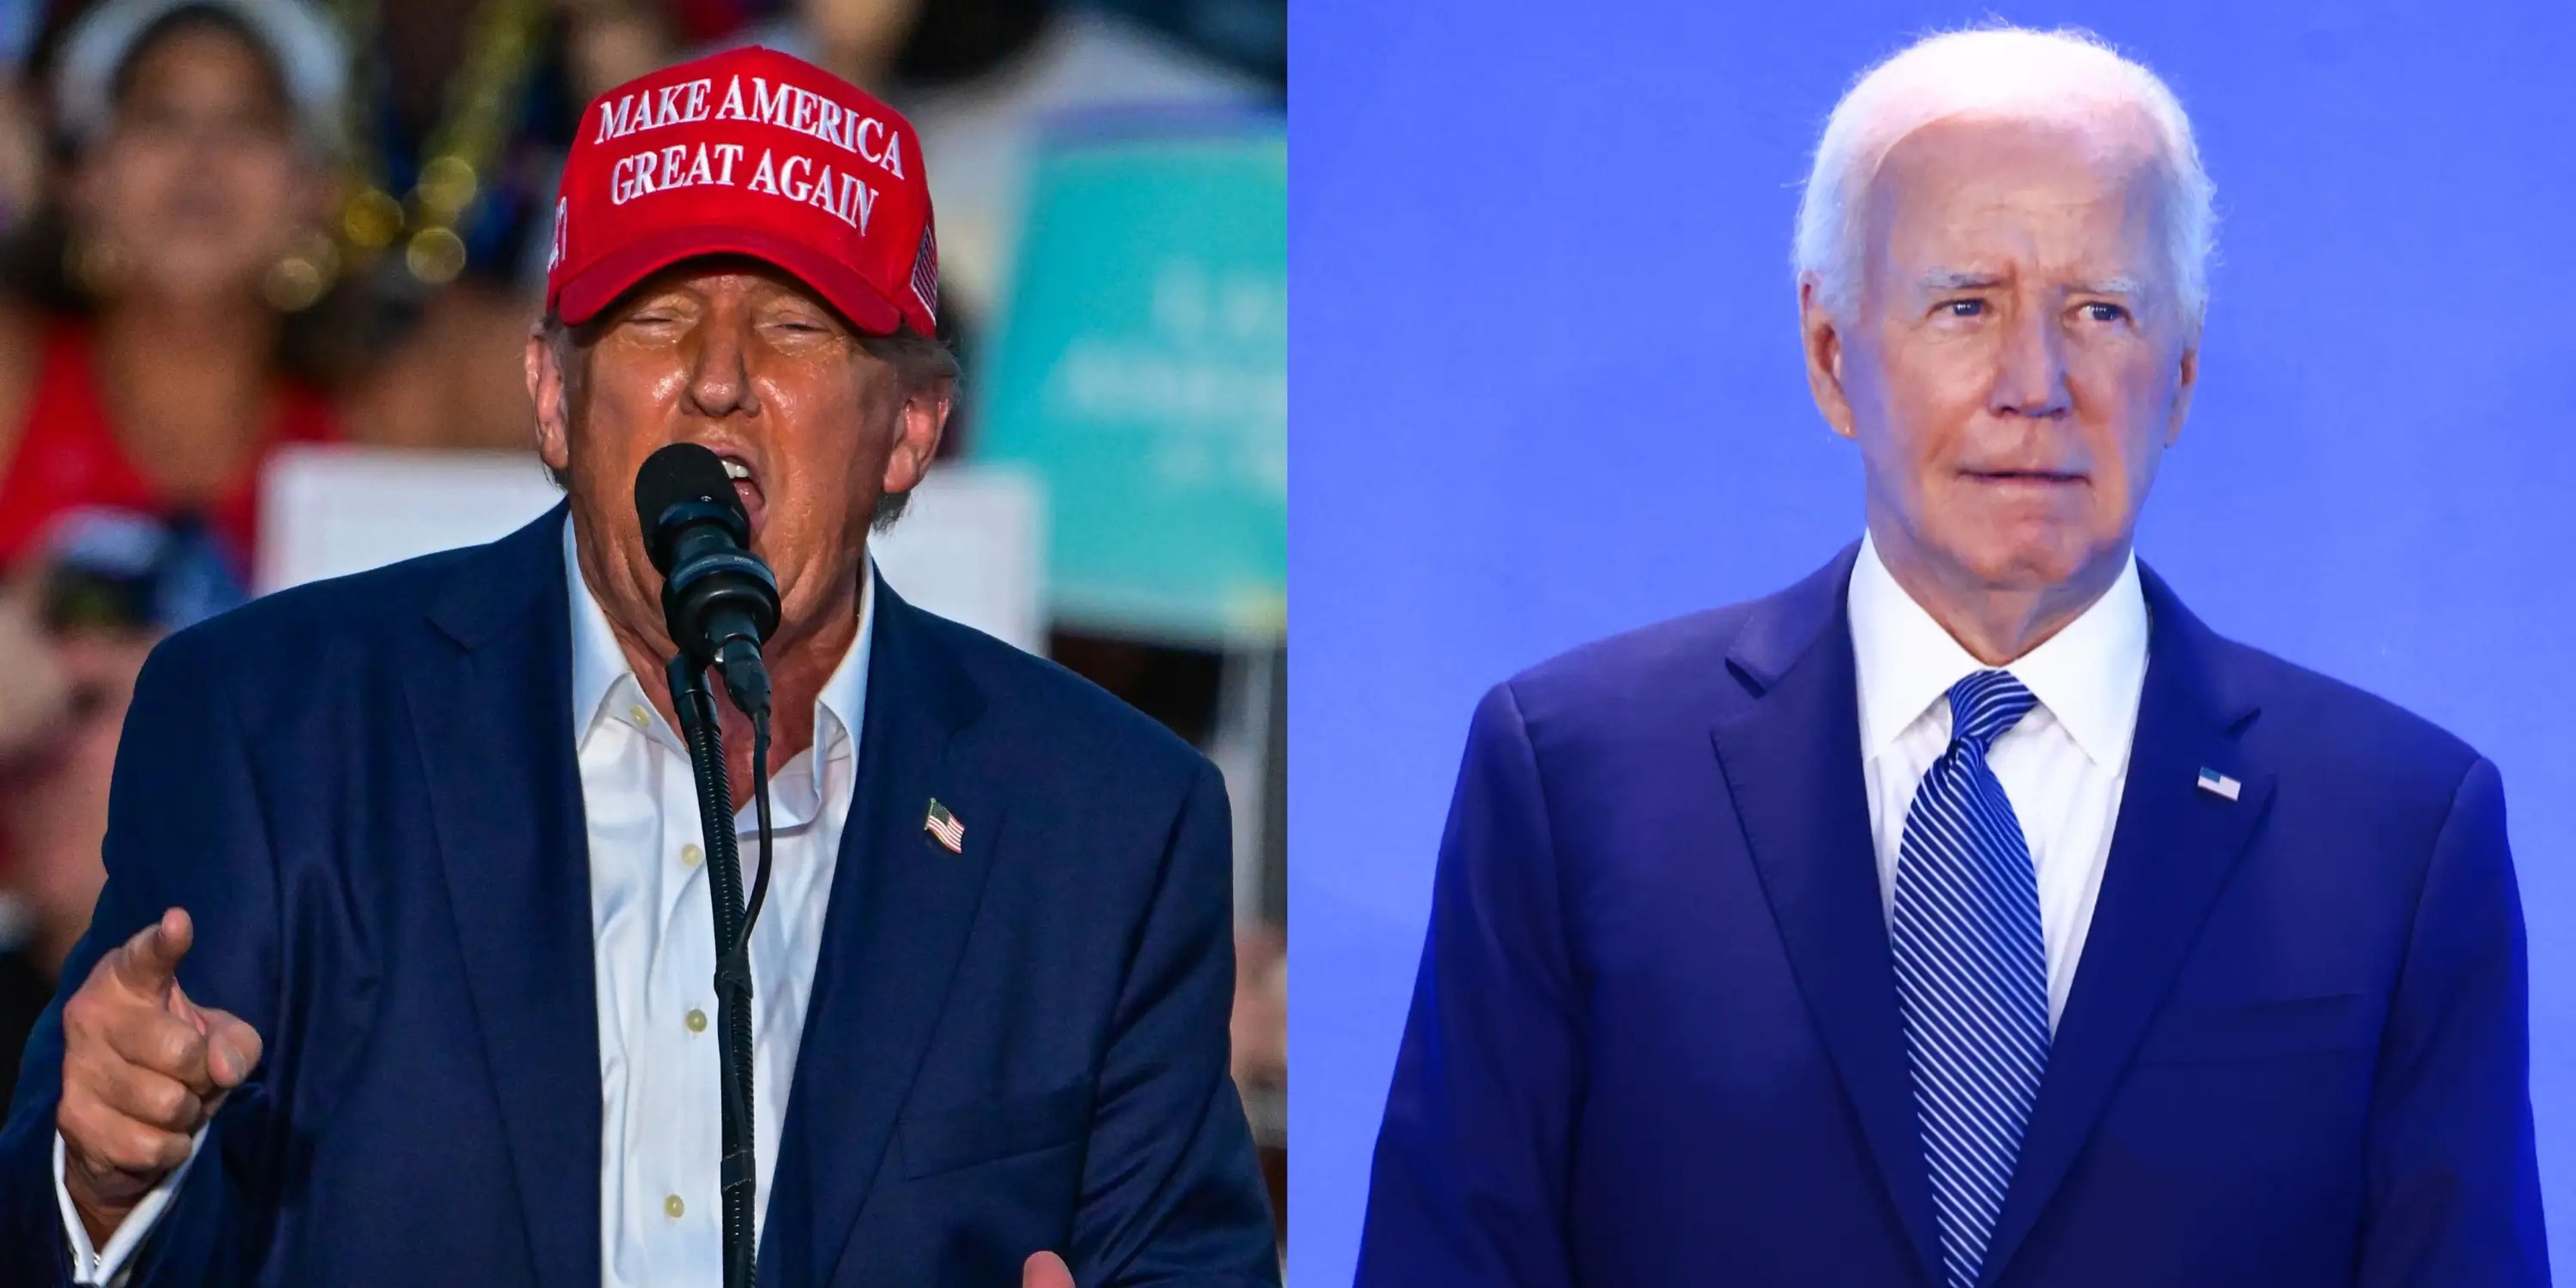 La posición del presidente Joe Biden tras el debate ha dejado a algunos demócratas preocupados por la posibilidad de que el ex presidente Donald Trump gane la reelección.